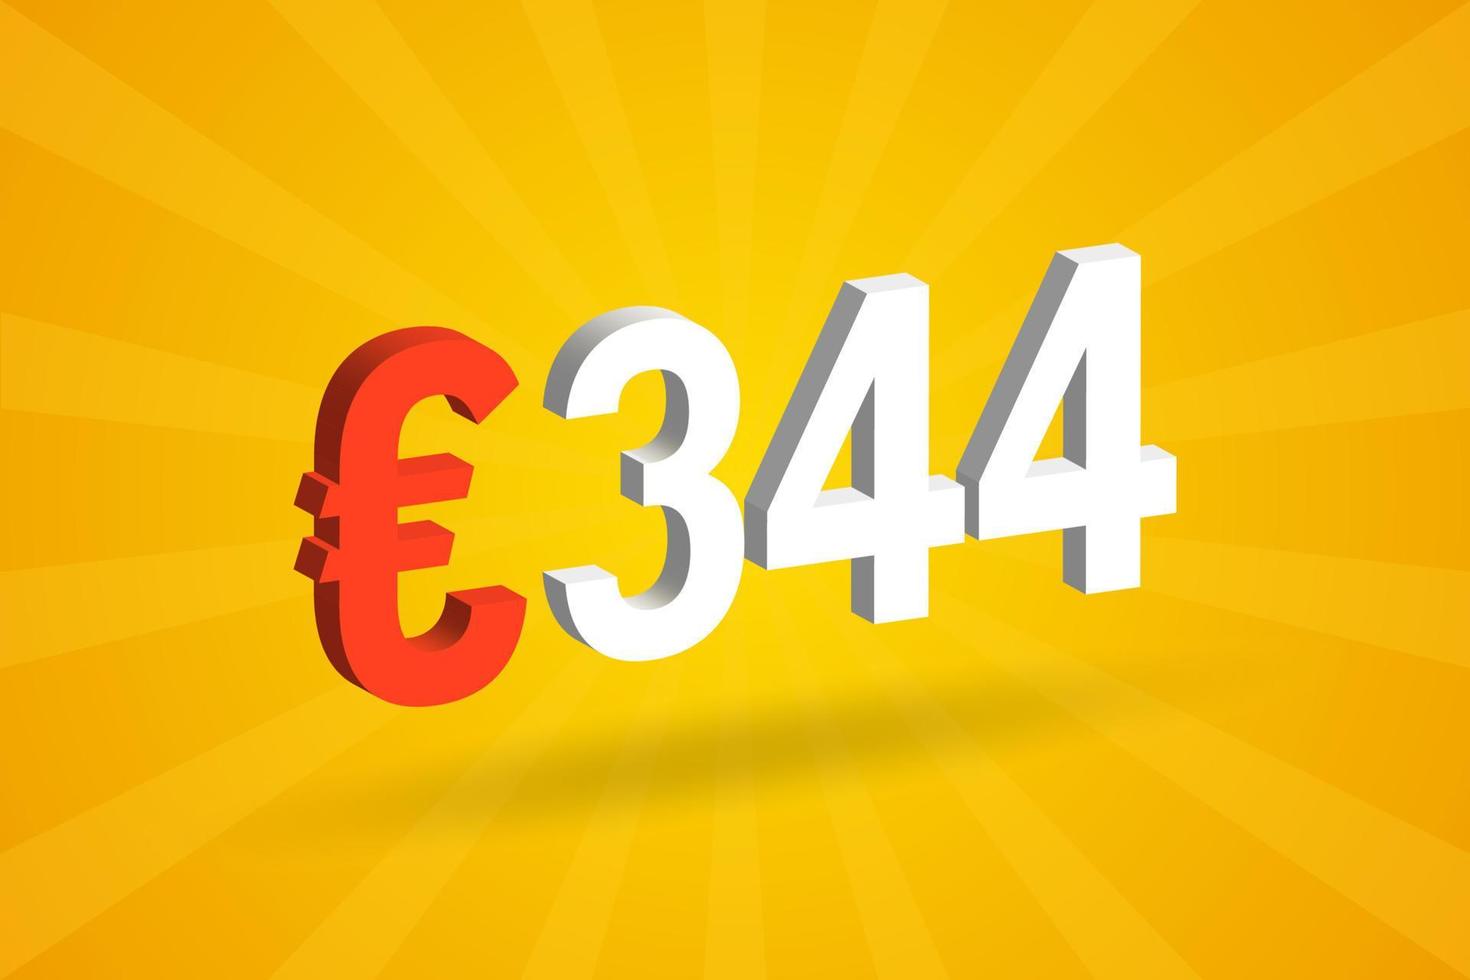 Símbolo de texto vectorial 3d de moneda de 344 euros. 3d 344 euros unión europea dinero stock vector